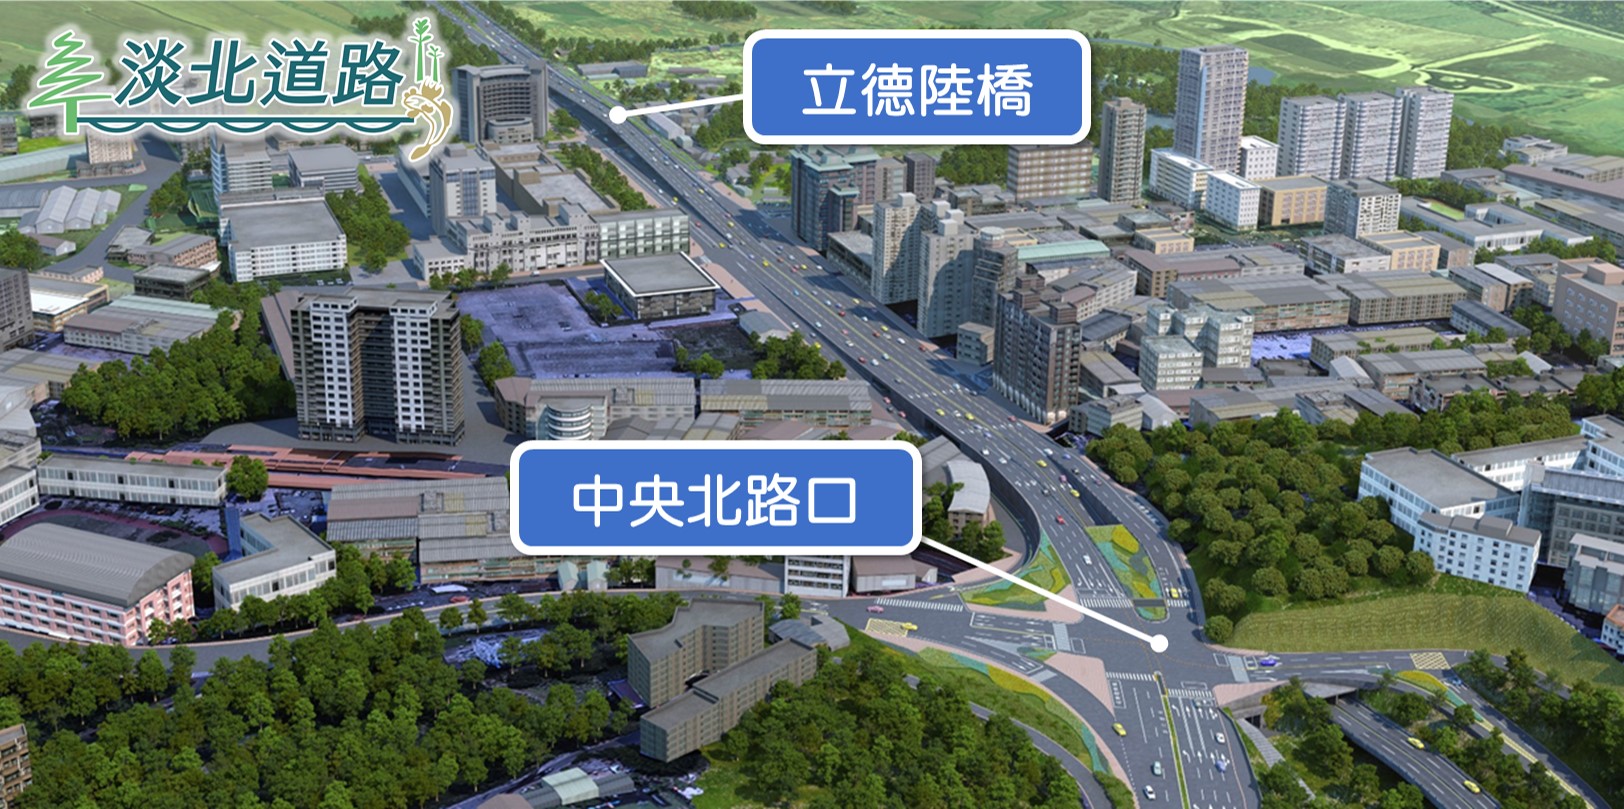 銜接新北市與台北市的「淡北道路」，力拚今年底動工，中央與地方攜手合作，規劃完整配套措施及建立合作平台，讓施工期間雙北交通更順暢。